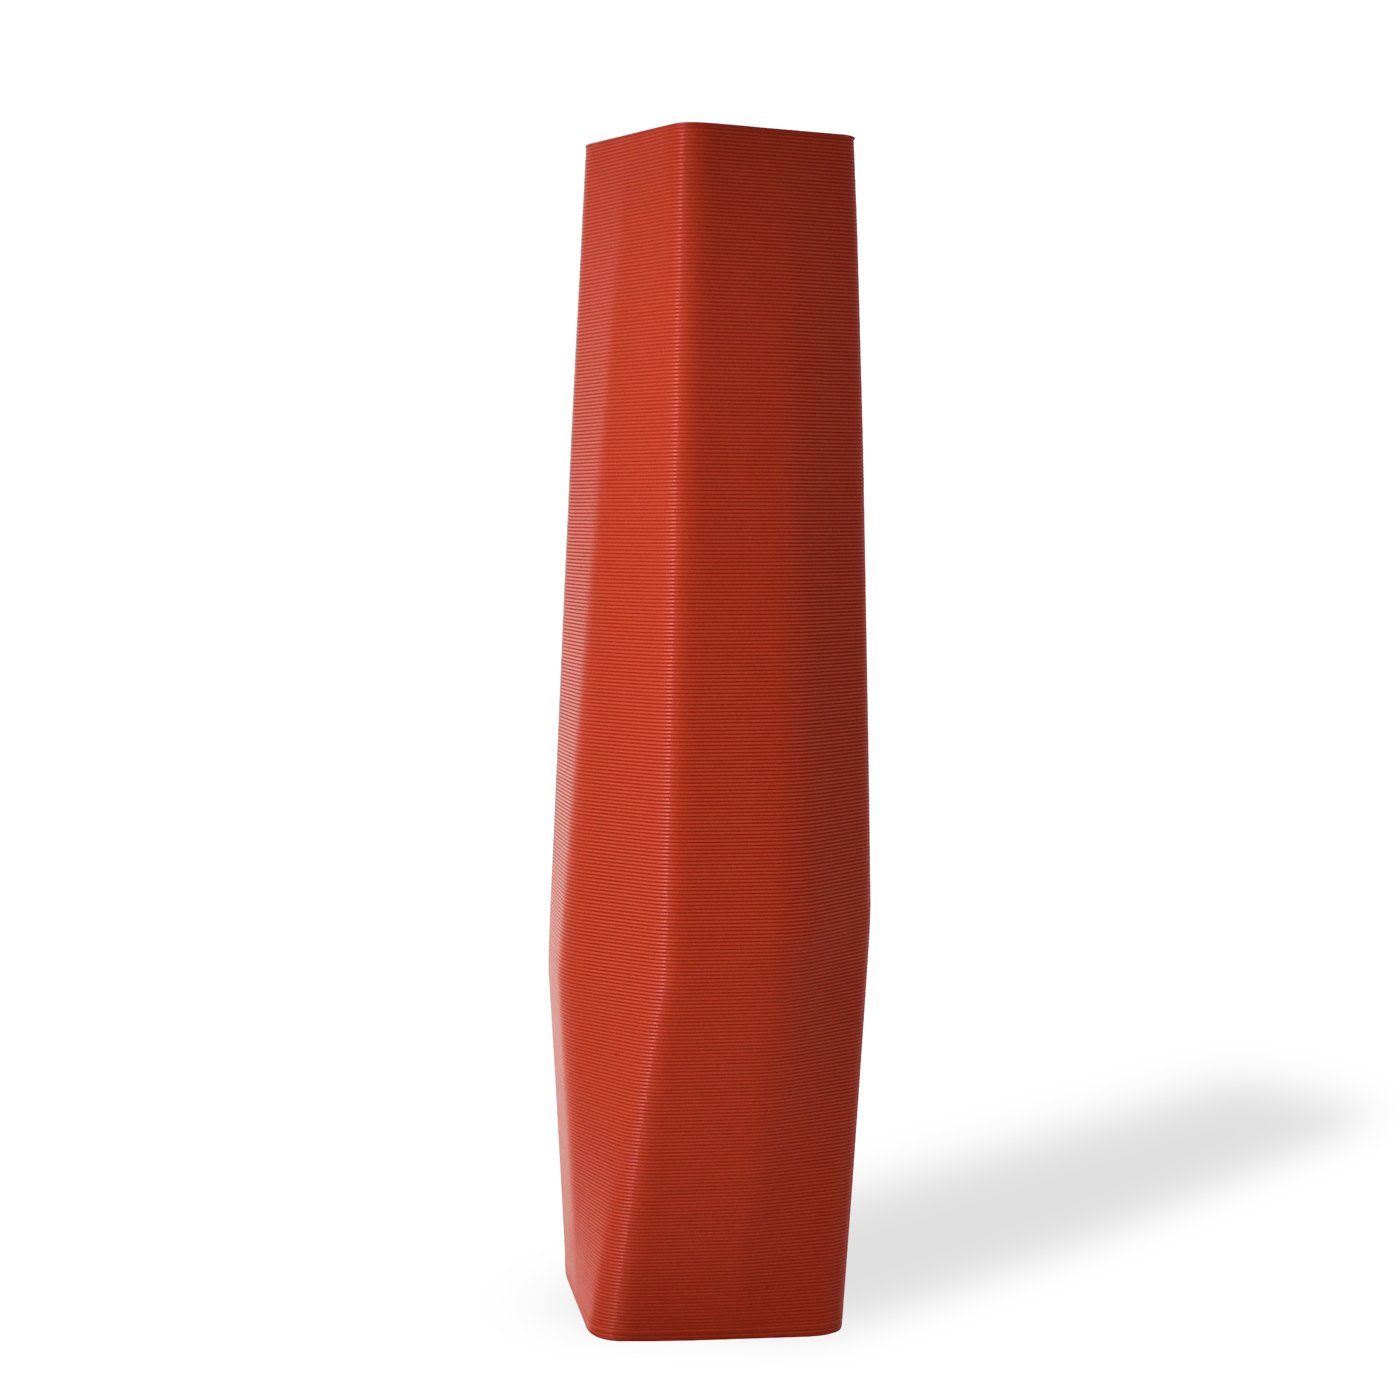 Shapes - Decorations Dekovase the vase - square (basic), 3D Vasen, viele Farben, 100% 3D-Druck (Einzelmodell, 1 Vase), Wasserdicht; Leichte Struktur innerhalb des Materials (Rillung) Terracotta (rot)